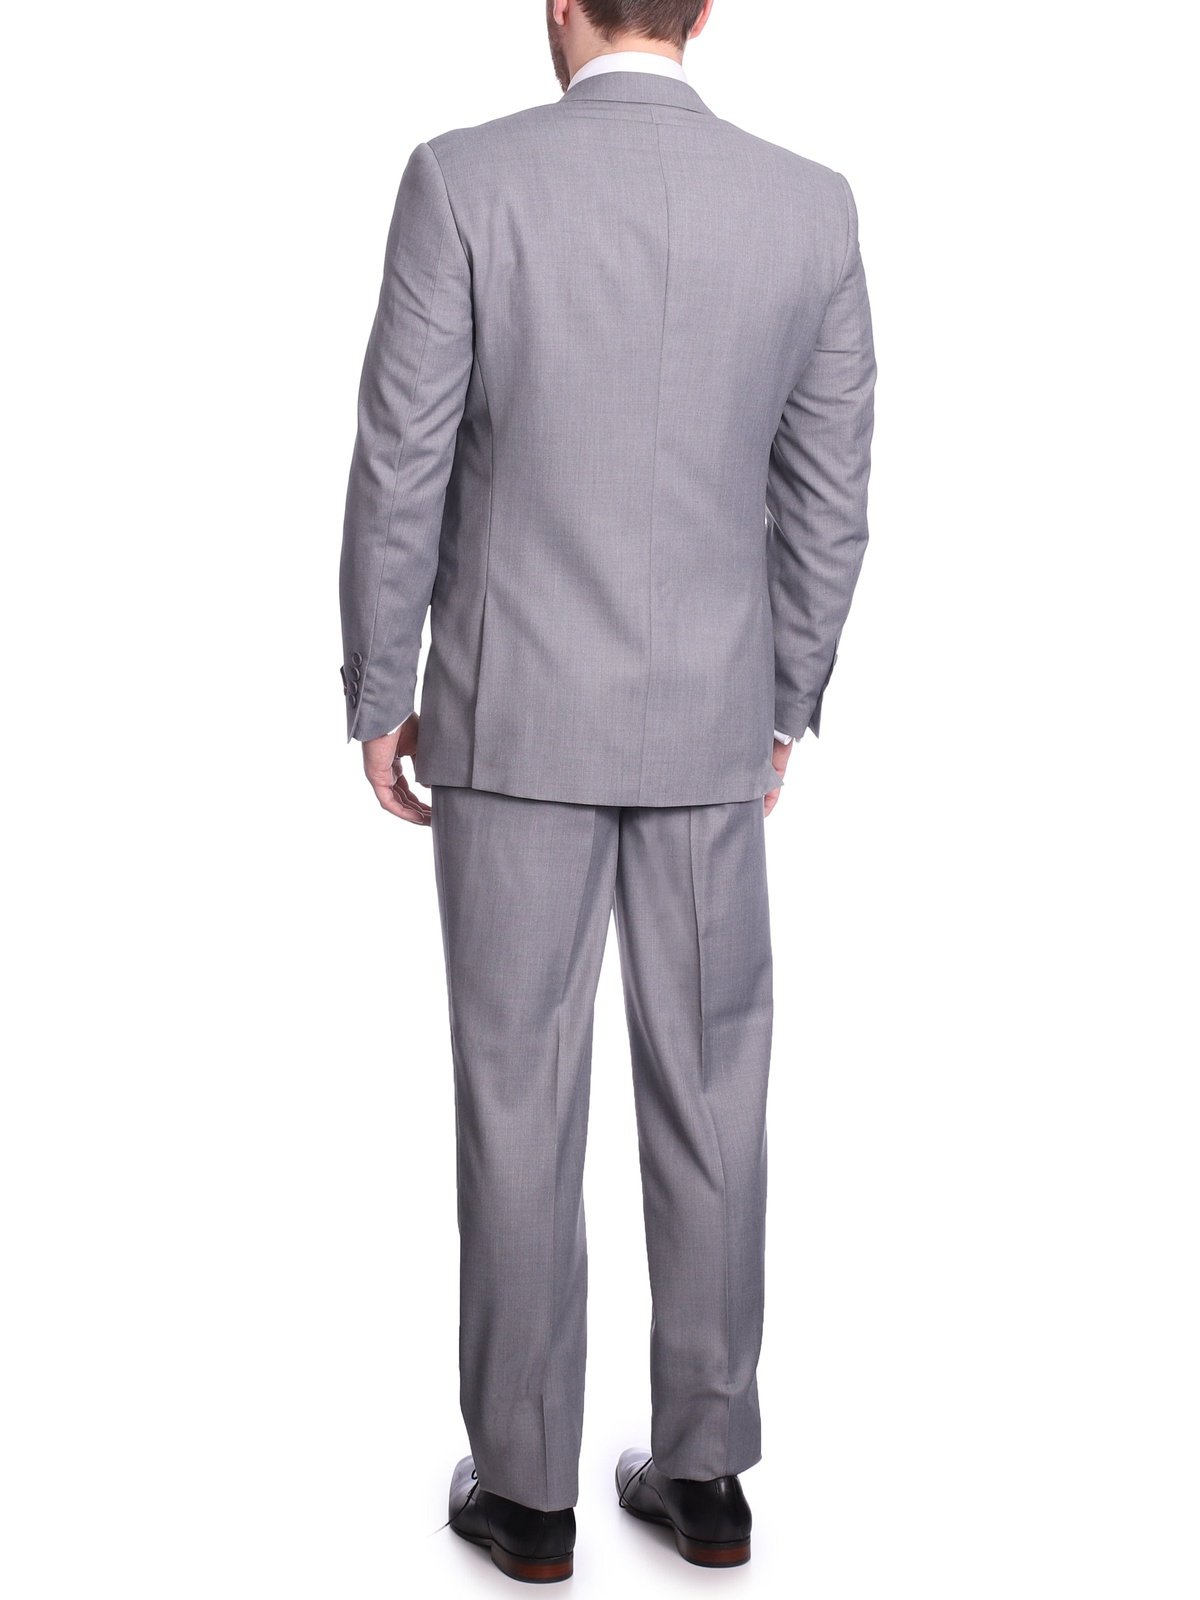 Slim Fit Men's Silver Grey 2 Button Notch Lapel Suit